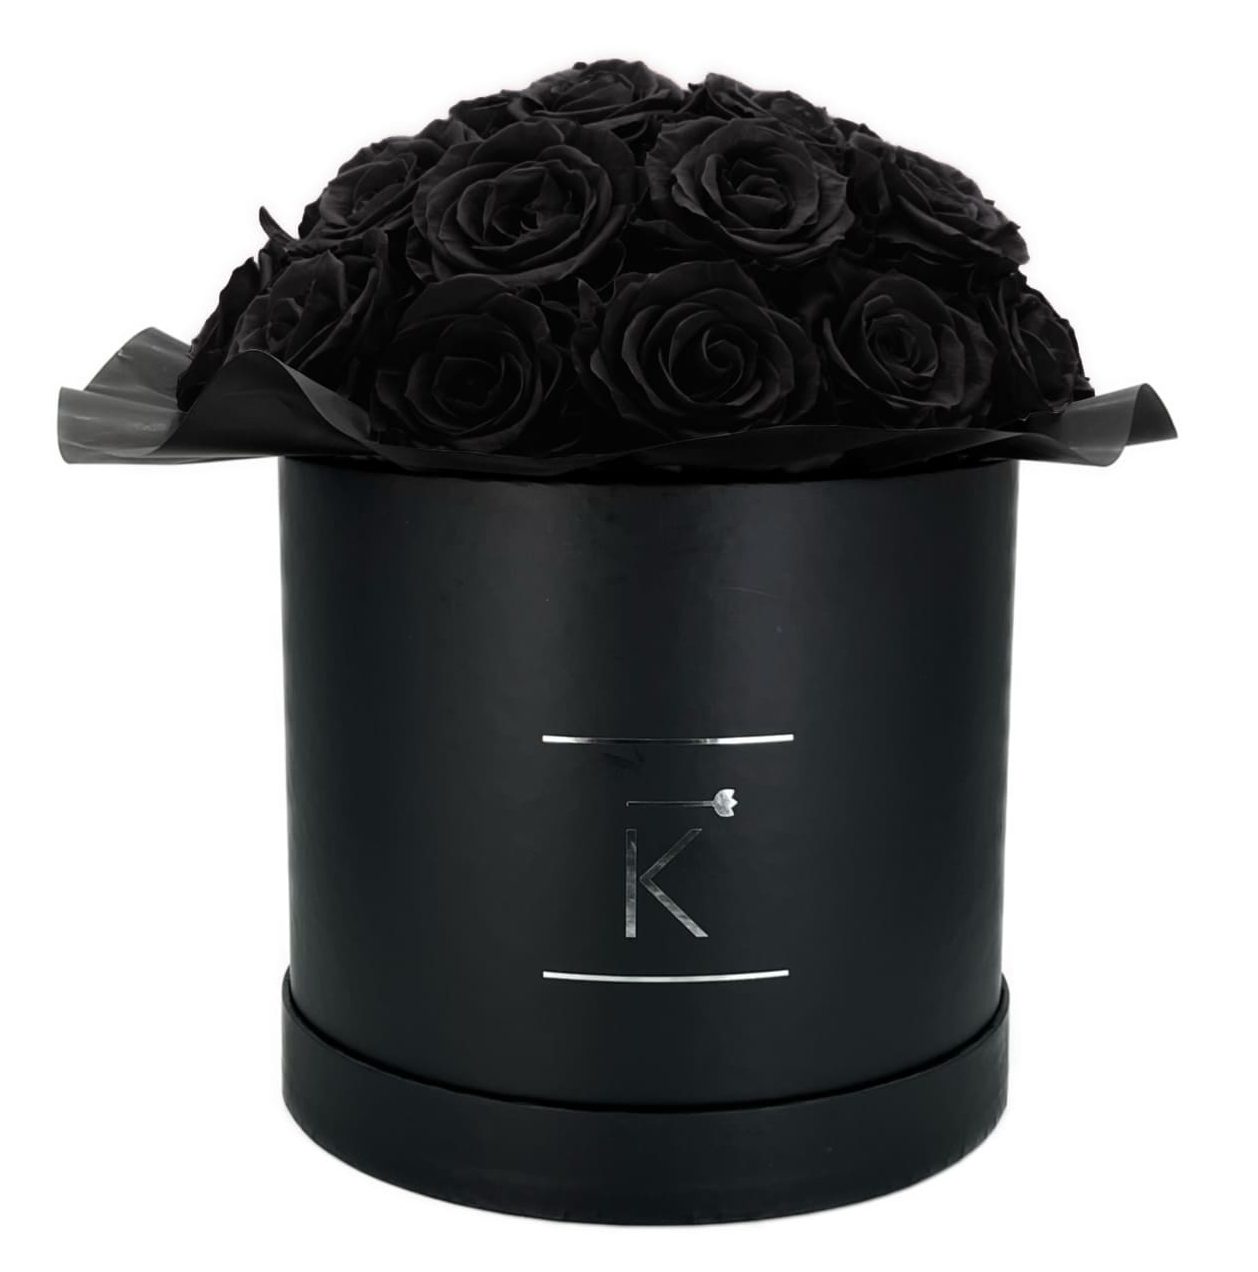 Gorgeous Rosenbox schwarz, schwarze Rosen, Ansicht von vorne